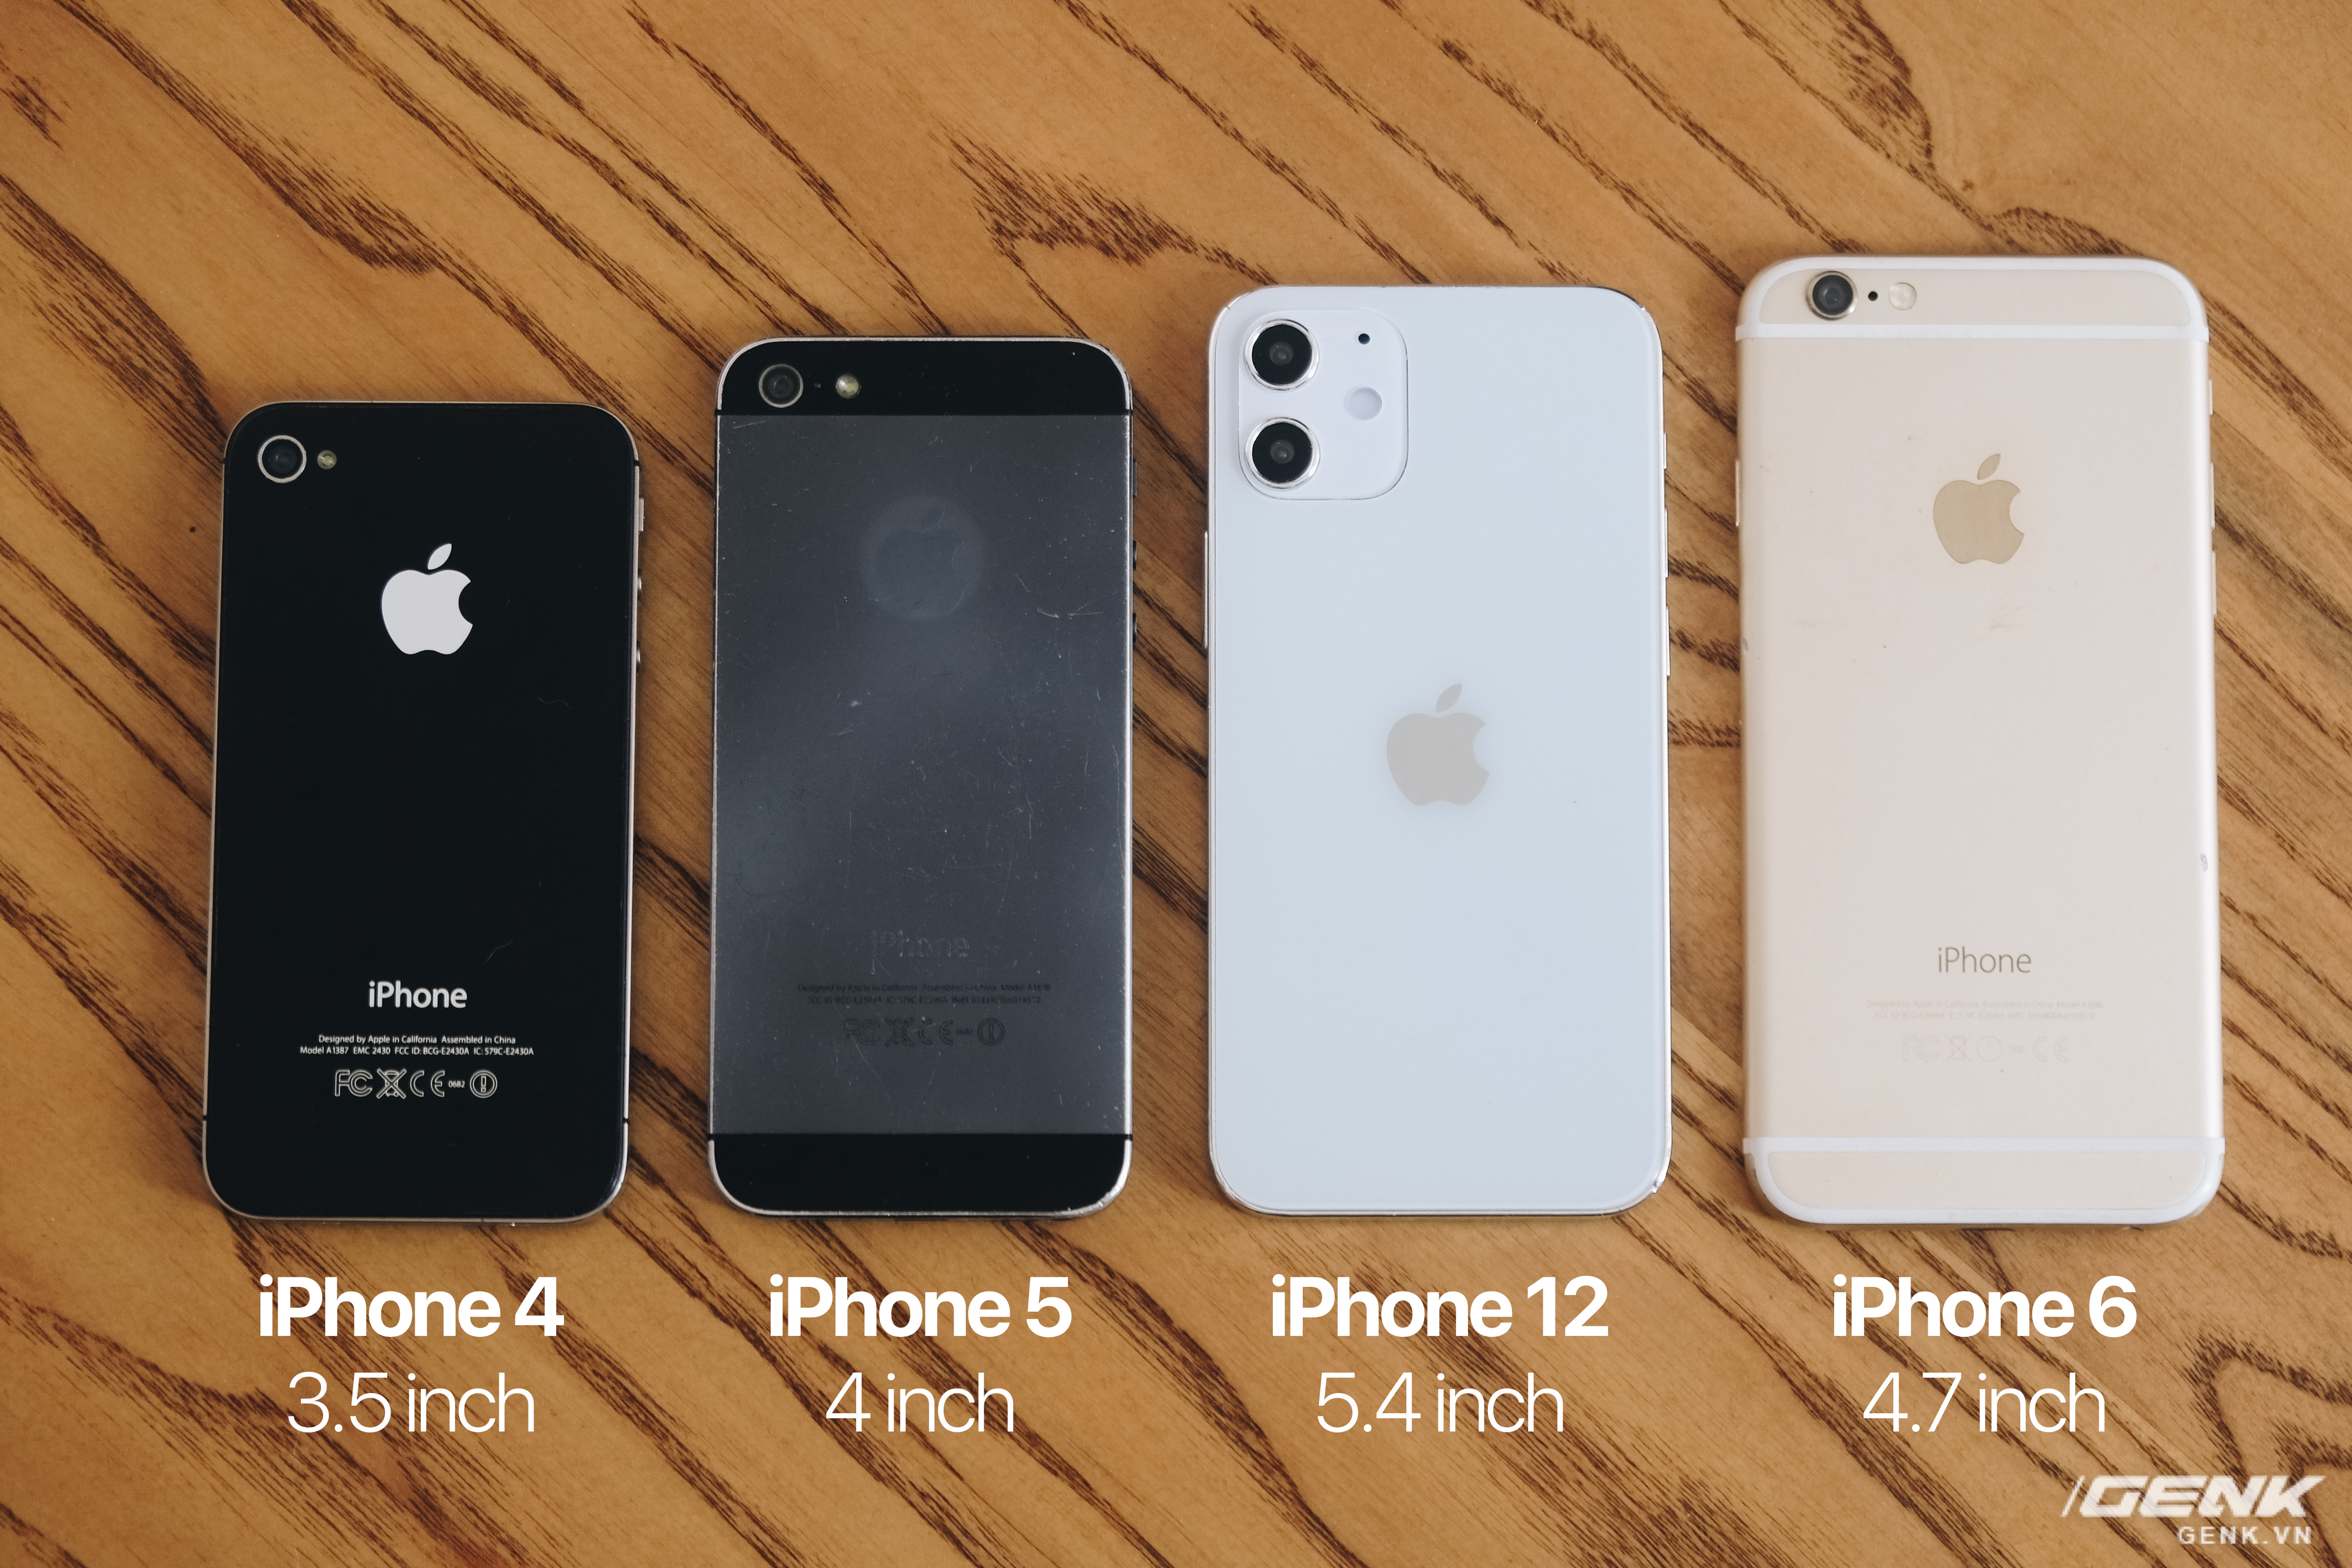 Hãy khám phá sự khác biệt giữa iPhone 12 và các phiên bản cũ để có thể lựa chọn cho mình một chiếc điện thoại hoàn hảo nhất. Từ thiết kế đến tính năng, từ hiệu năng đến giá cả, chúng tôi sẽ giúp bạn so sánh và tìm ra chiếc điện thoại phù hợp với nhu cầu của bạn nhất.